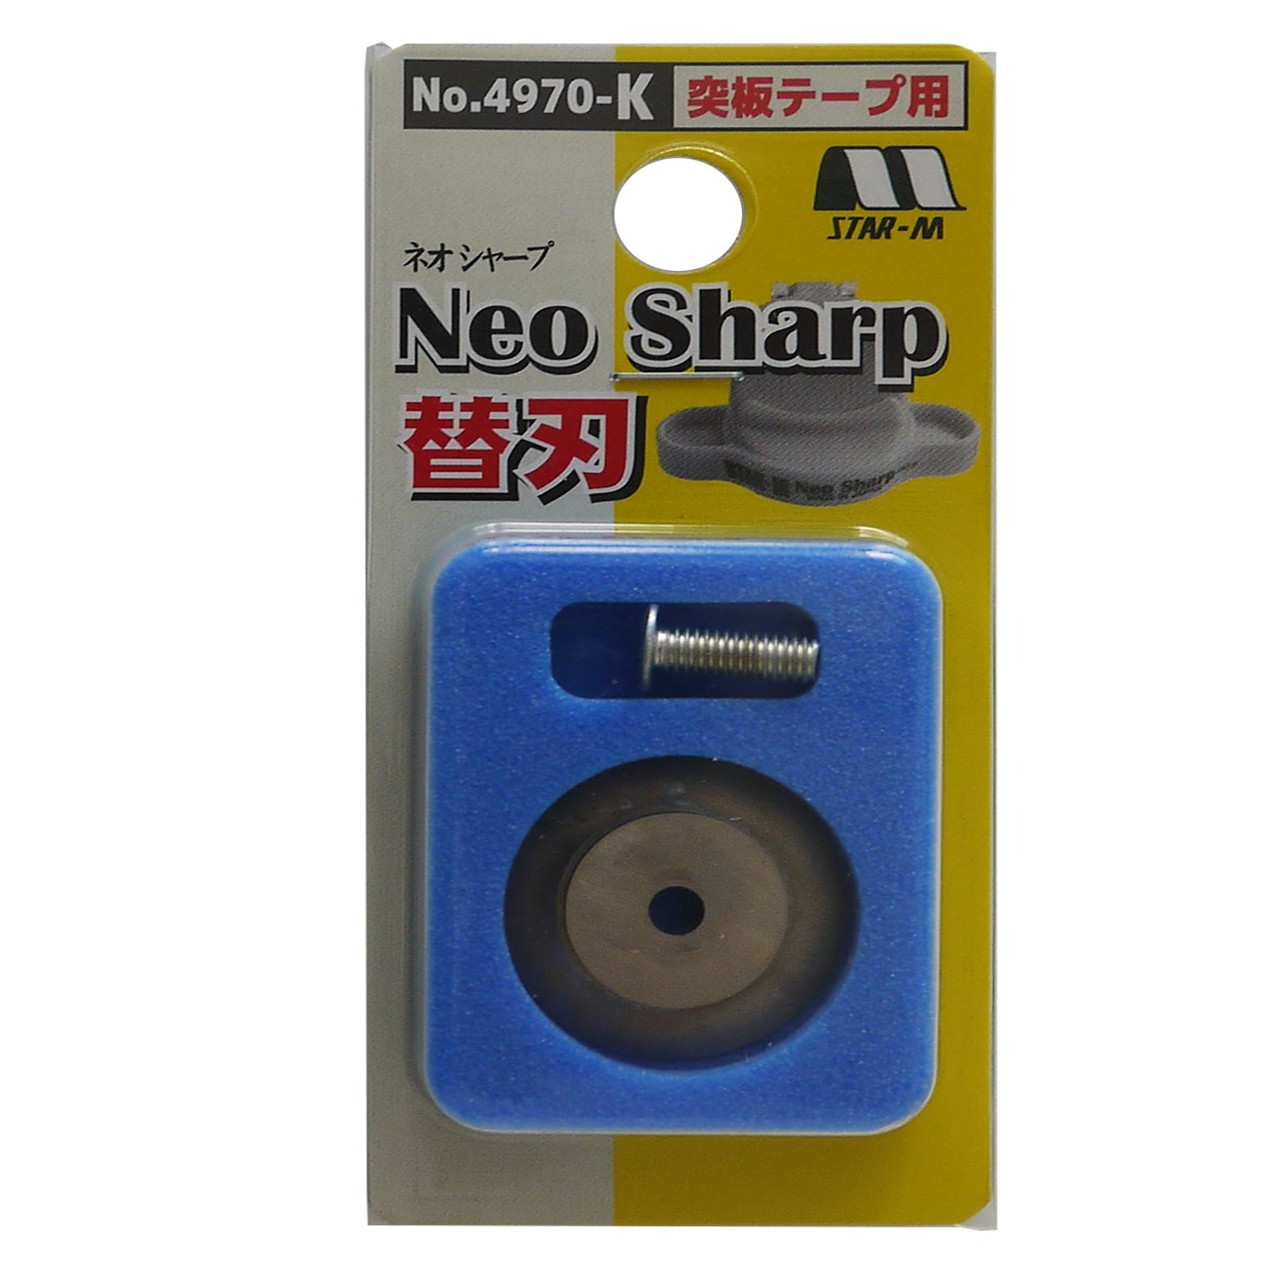 Dao gọt chỉ siêu bén loại mới NeoSharp Star-M No.4970